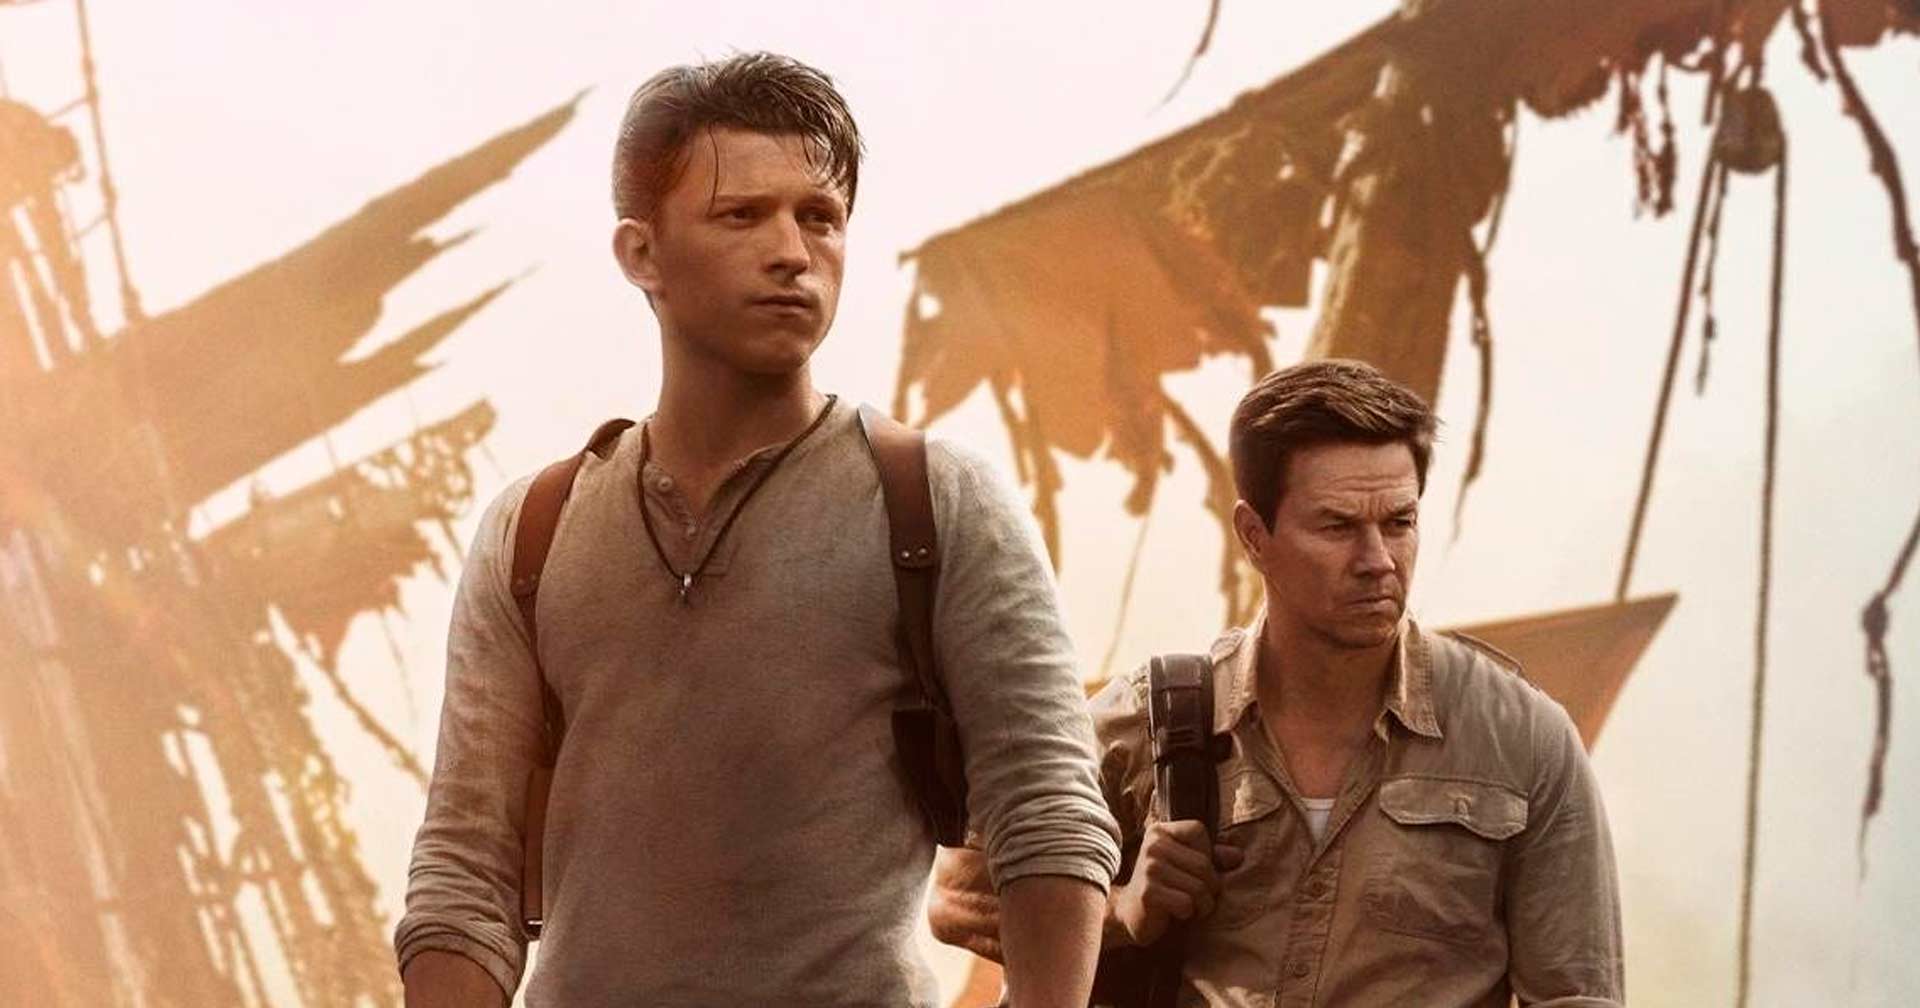 Novo filme a caminho: executivo da Sony Pictures confirma desenvolvimento  de 'Uncharted 2' - Ingresso.com